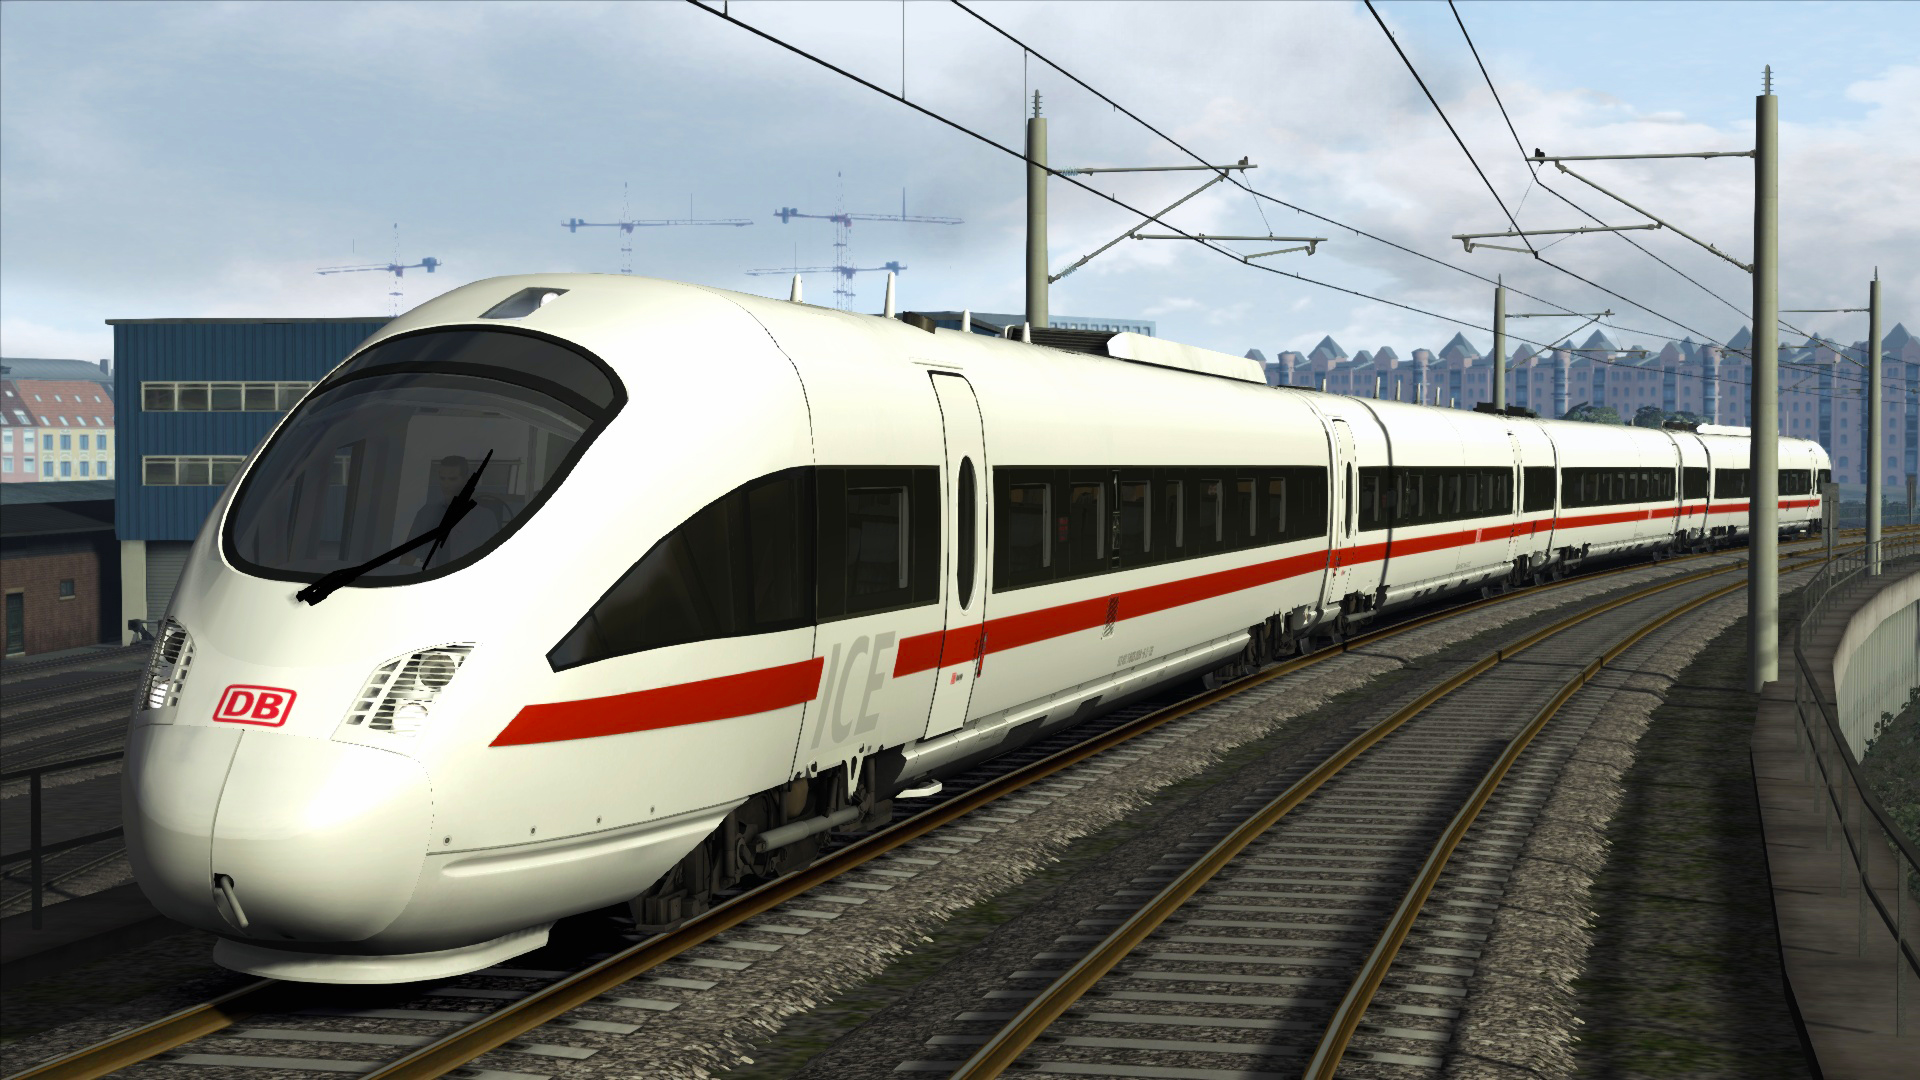 (1.34$) Train Simulator - DB BR 605 ICE TD Add-On DLC Steam CD Key